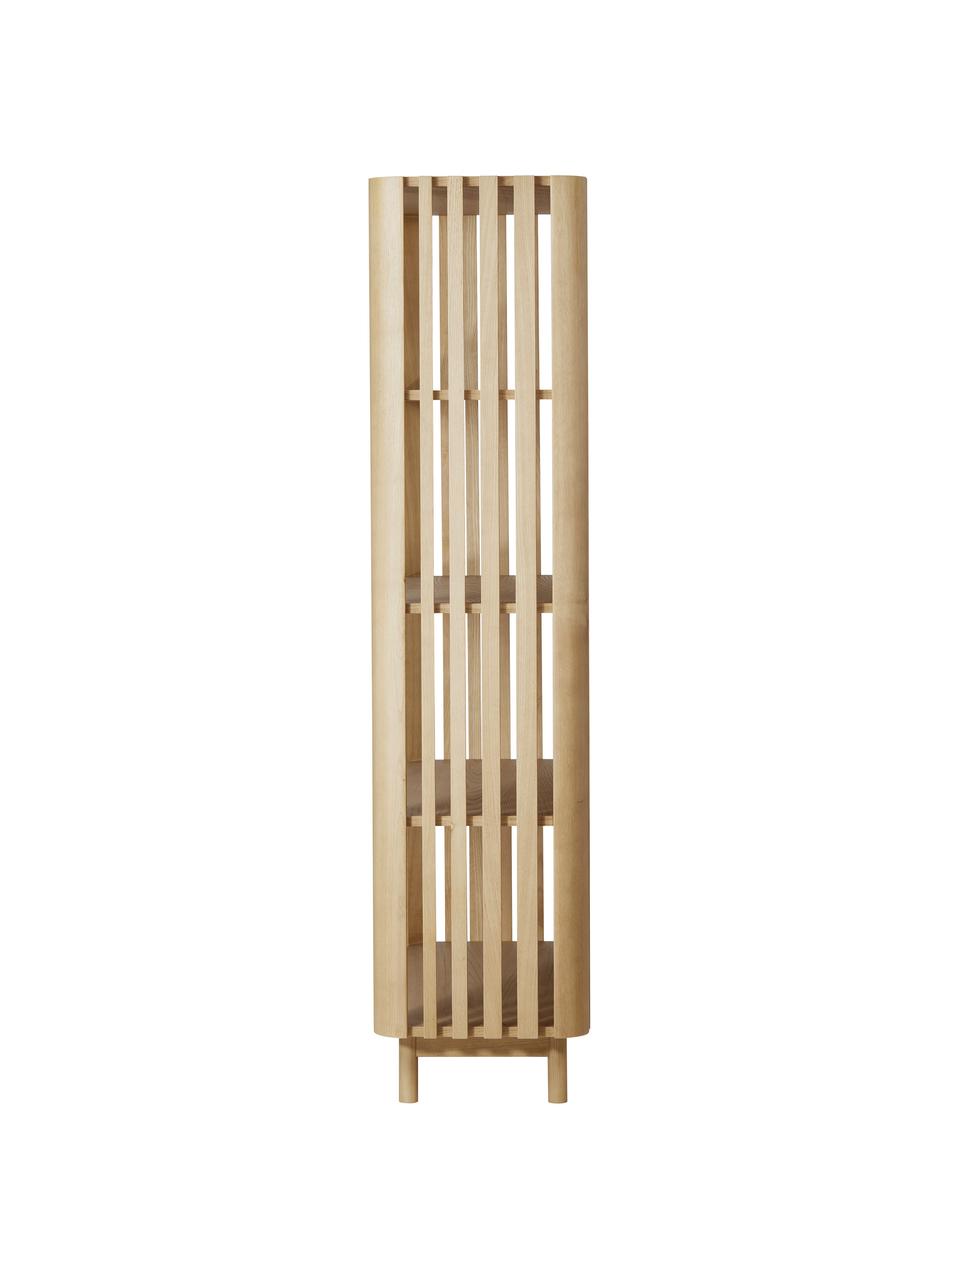 Regál z kaštanového dřeva Tridan, Kaštanové dřevo, dřevovláknitá deska střední hustoty (MDF), Kaštanové dřevo, Š 110 cm, V 180 cm